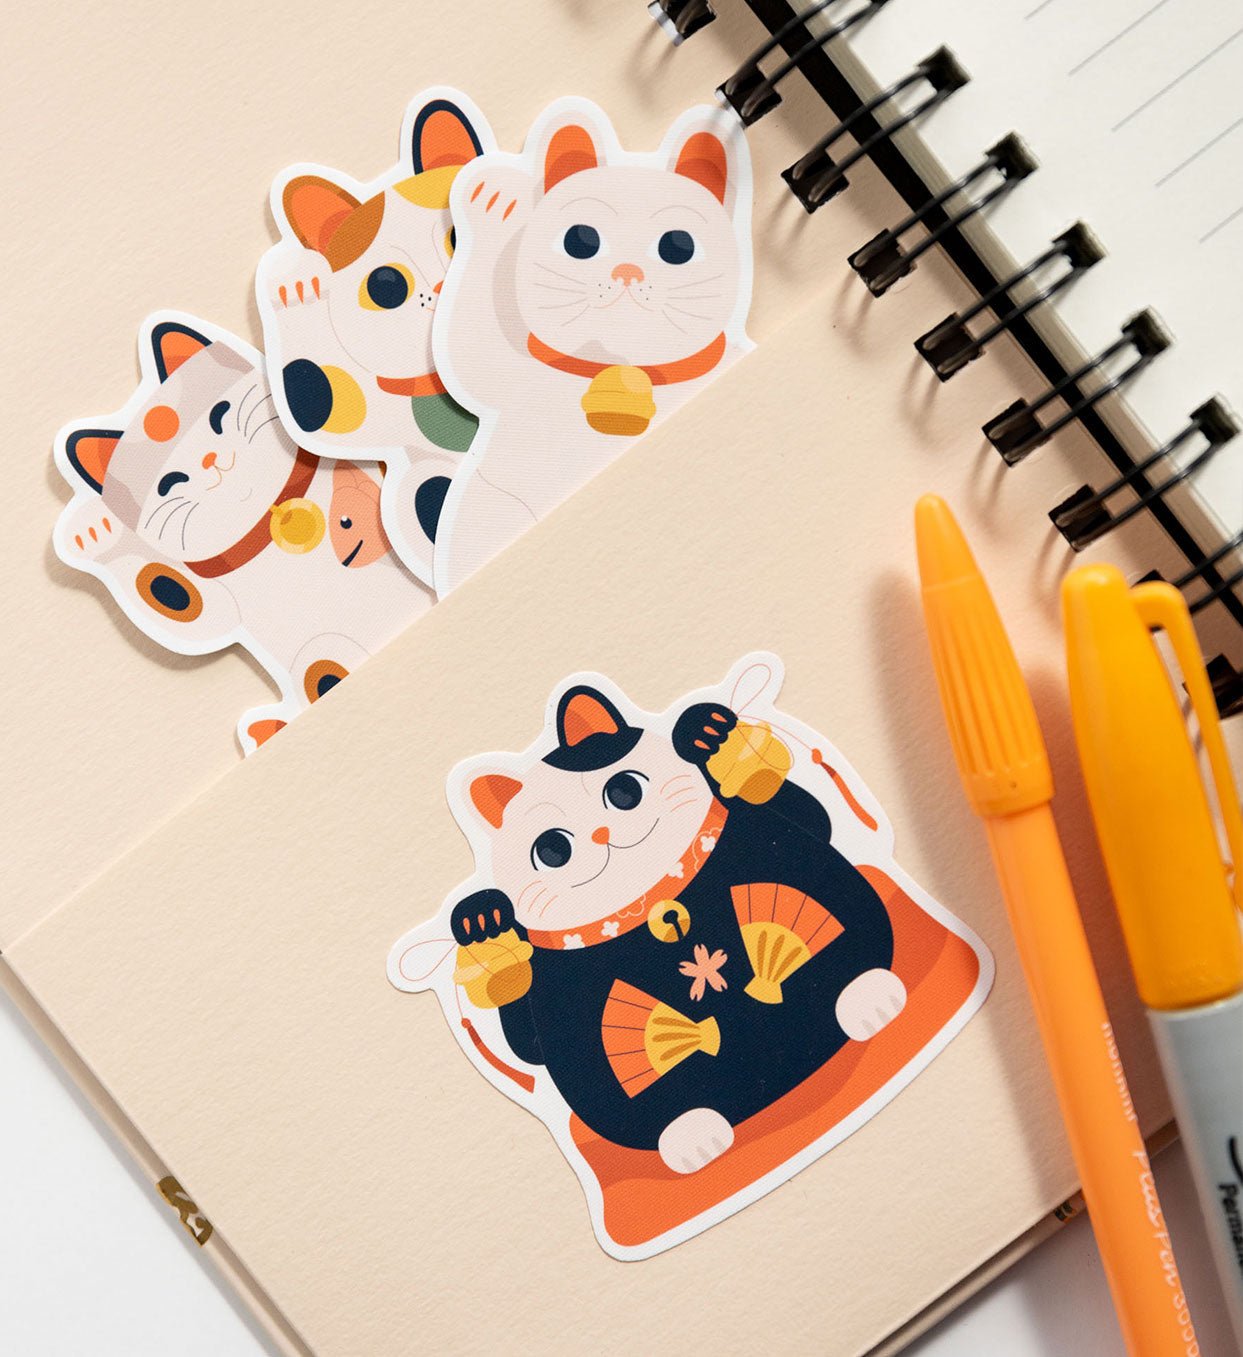 Set de 7 Stickers Reutilizables: Maneki-neko, Gatos de la suerte - Tienda Pasquín